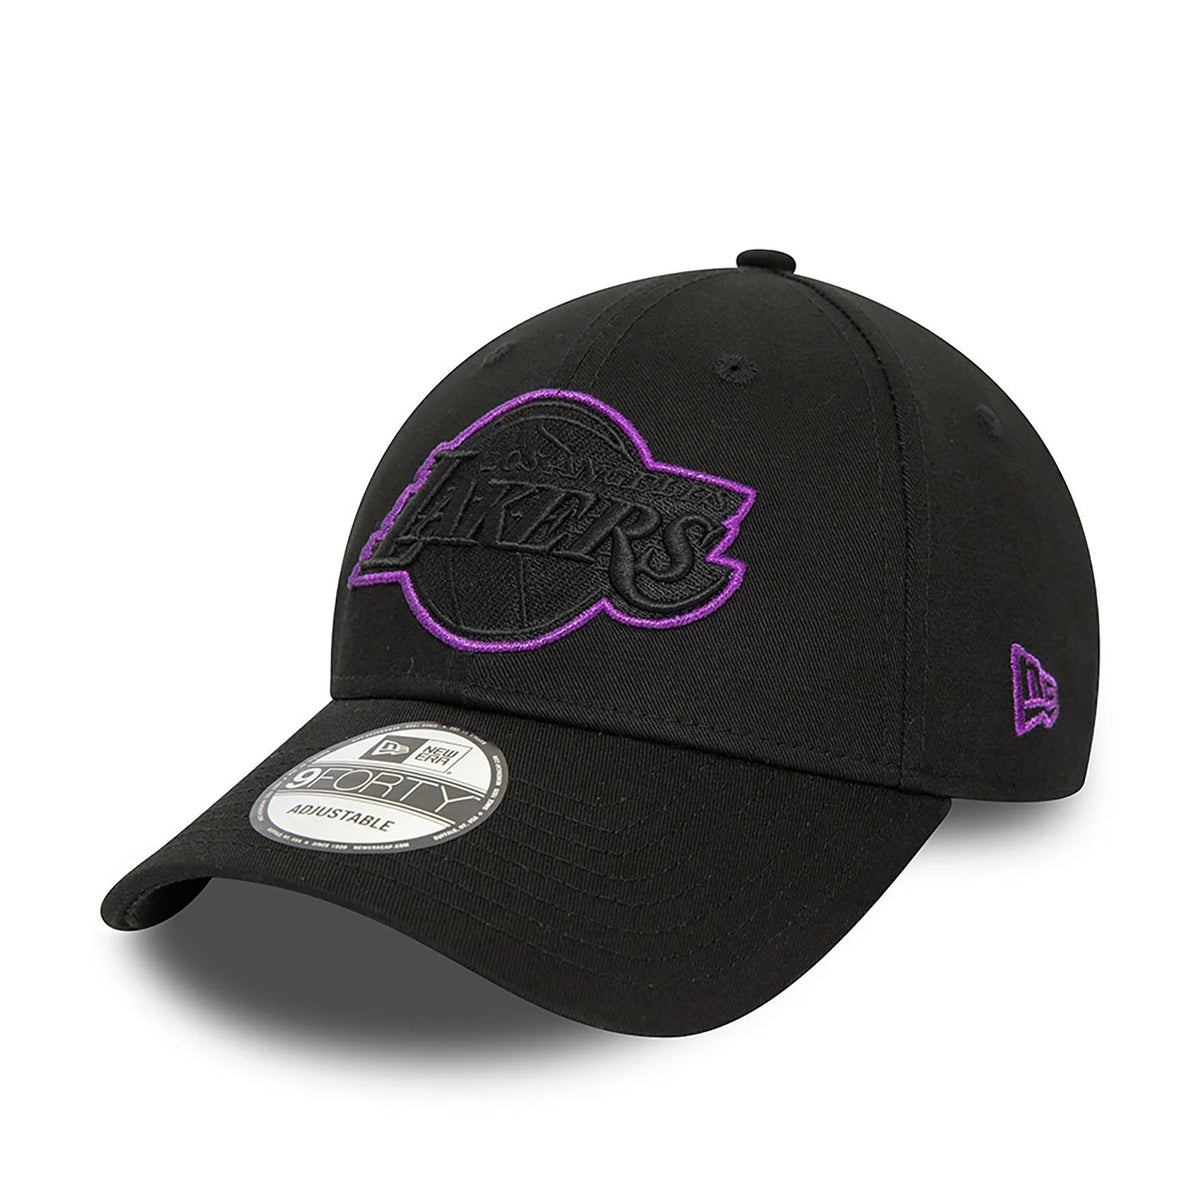 New Era Lakers Metallic Outline unisex cap in black